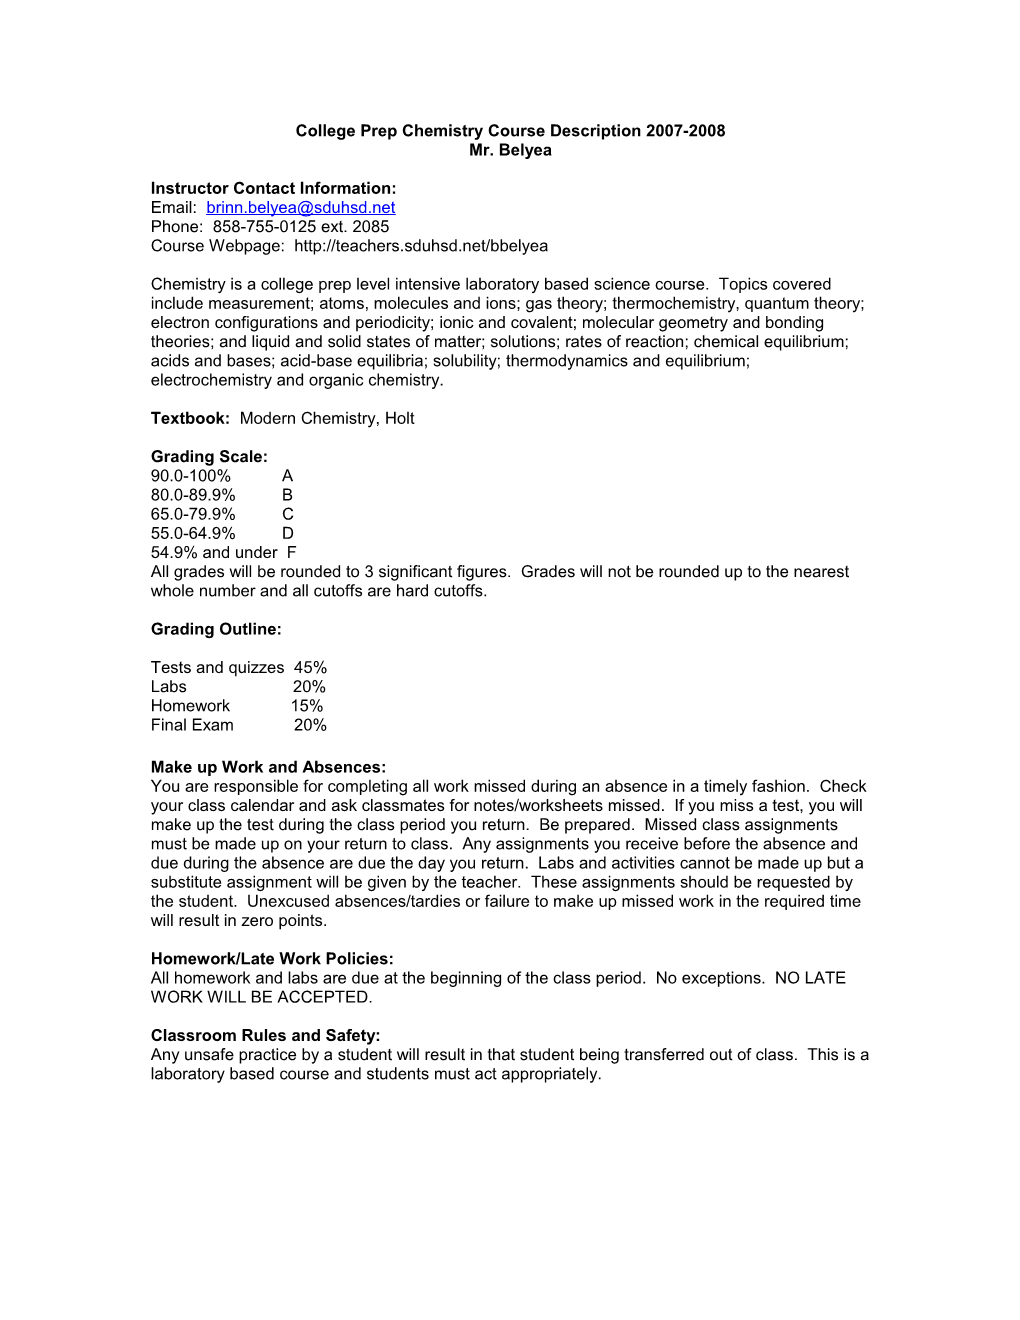 AP Chemistry Course Description 2007-2008